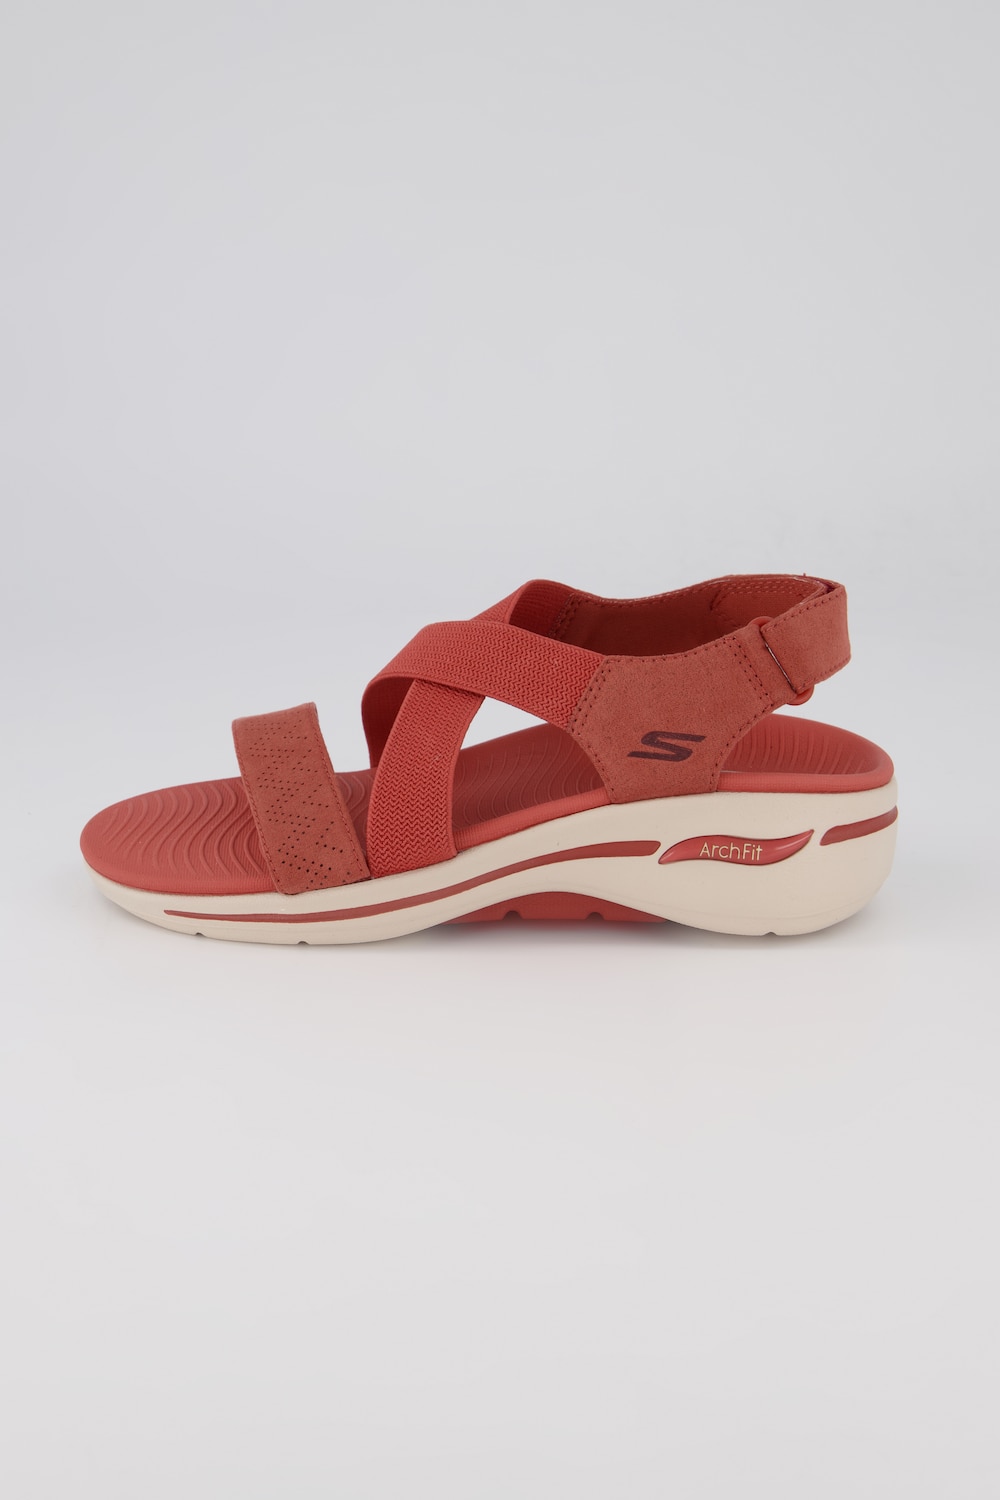 Grote Maten Skechers sandalen, Dames, rood, Maat: 40, Polyester, Ulla Popken